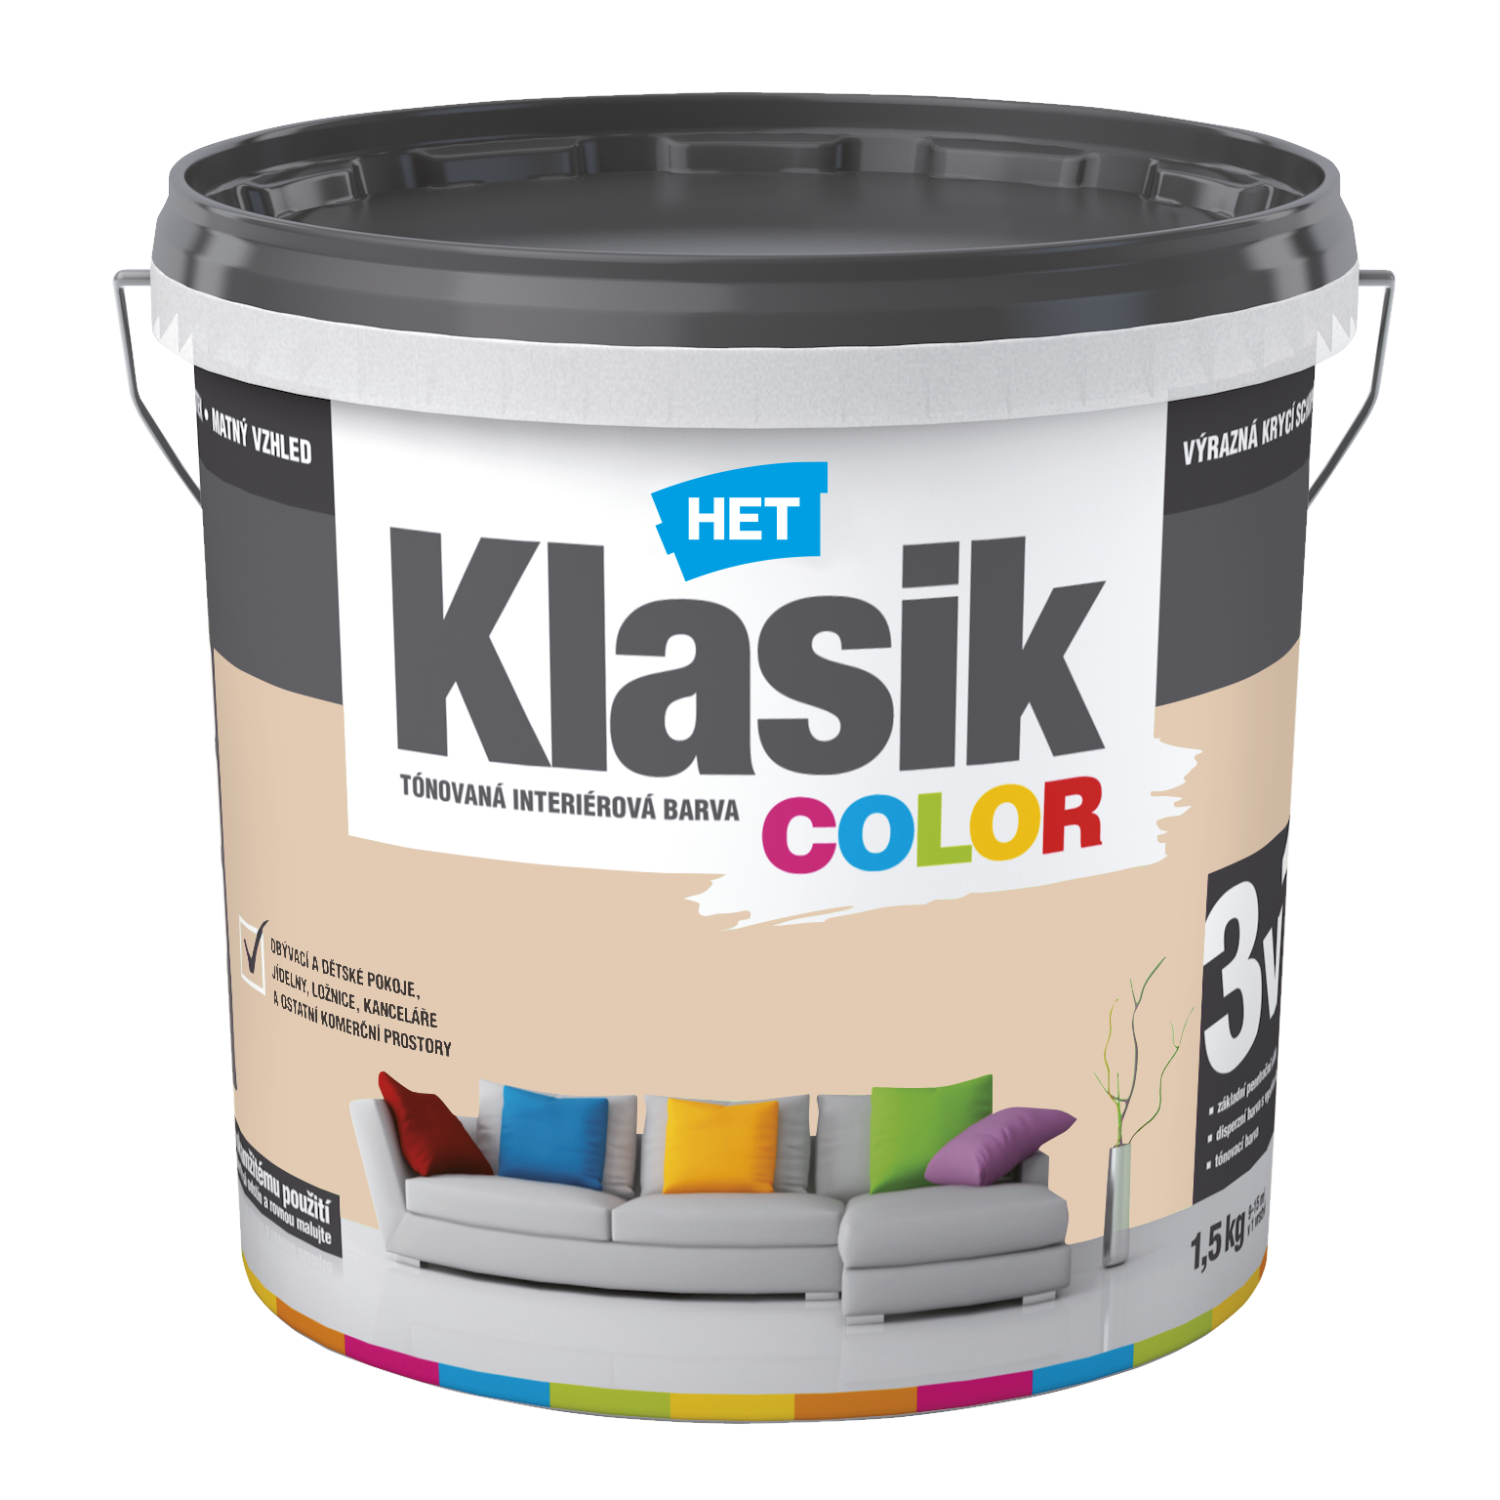 HET Klasik COLOR tónovaná interiérová akrylátová disperzná oteruvzdorná farba 1,5 kg, KC0247 - béžový krémový